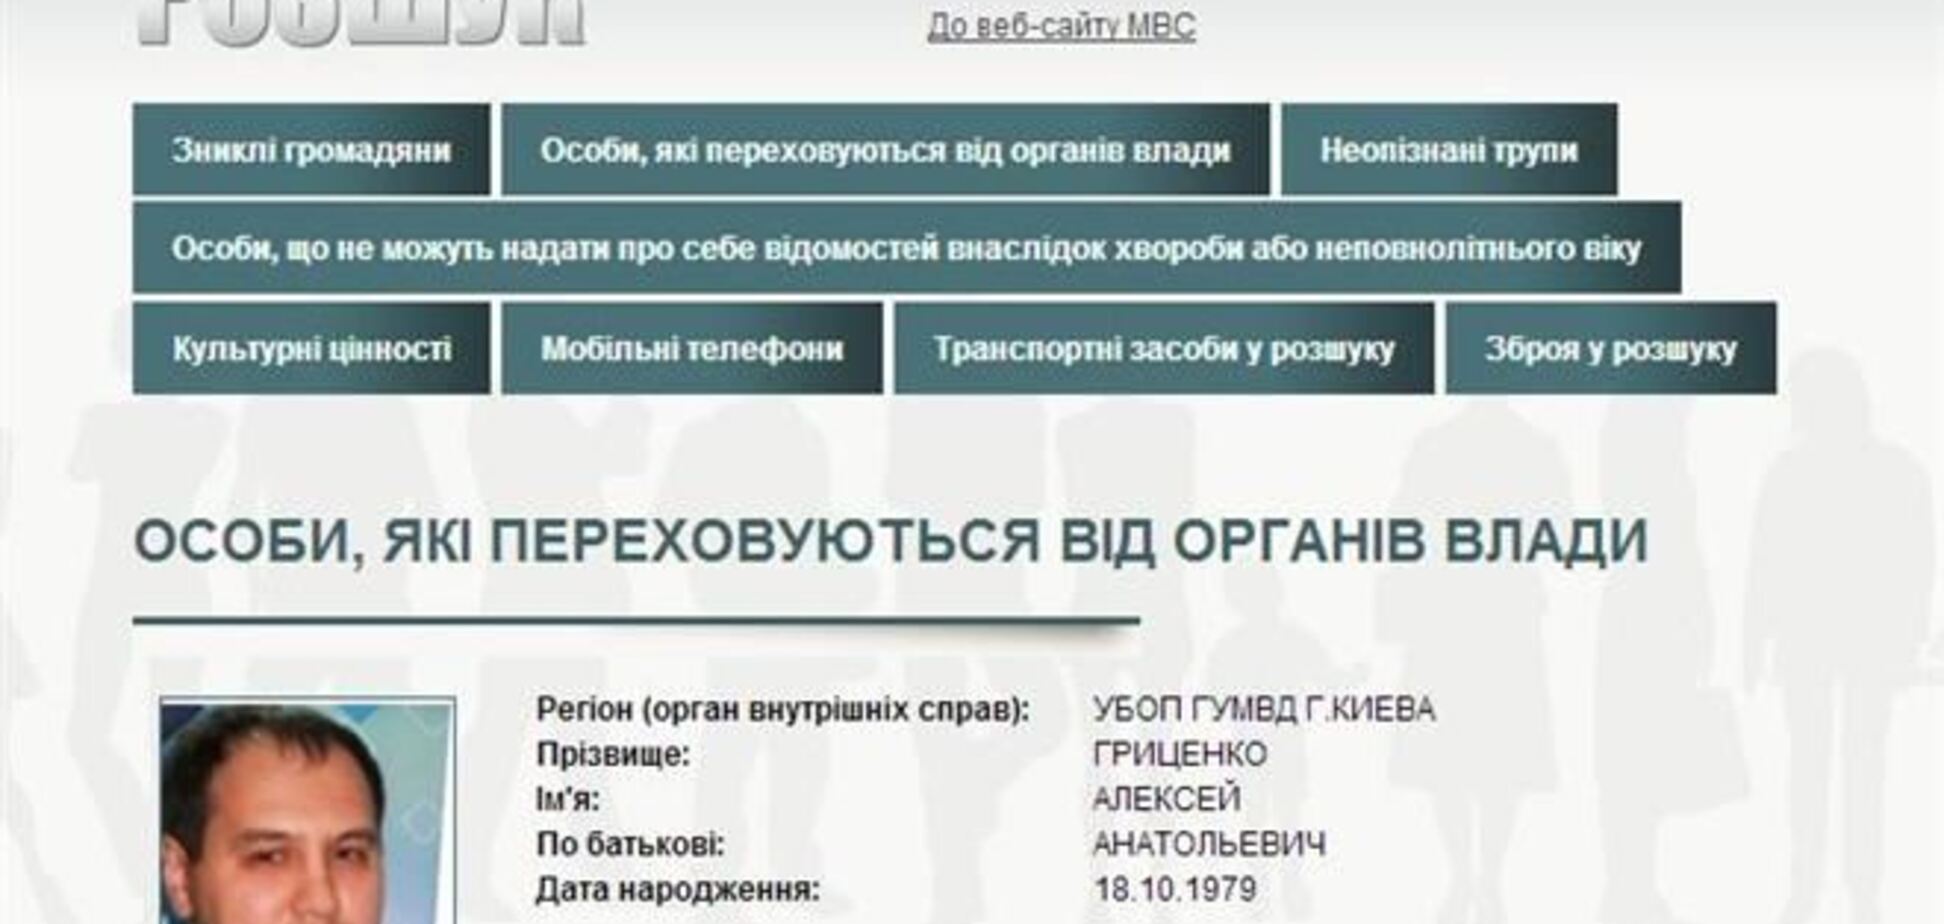 МВД объявило Алексея Гриценко в розыск